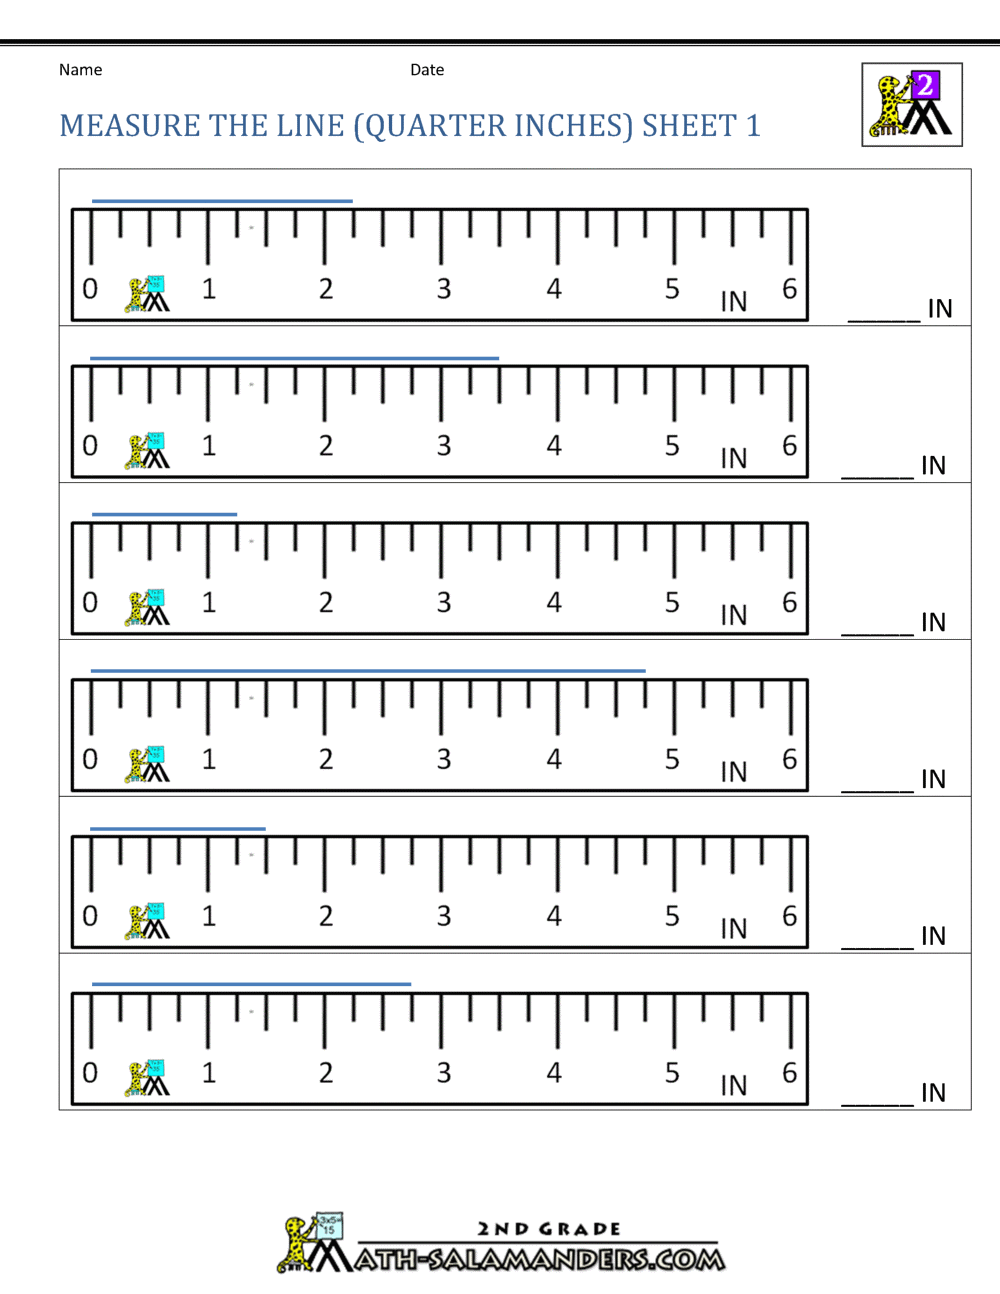 Grade 1 Measurement Worksheets Measuring Lengths With A Ruler K5 